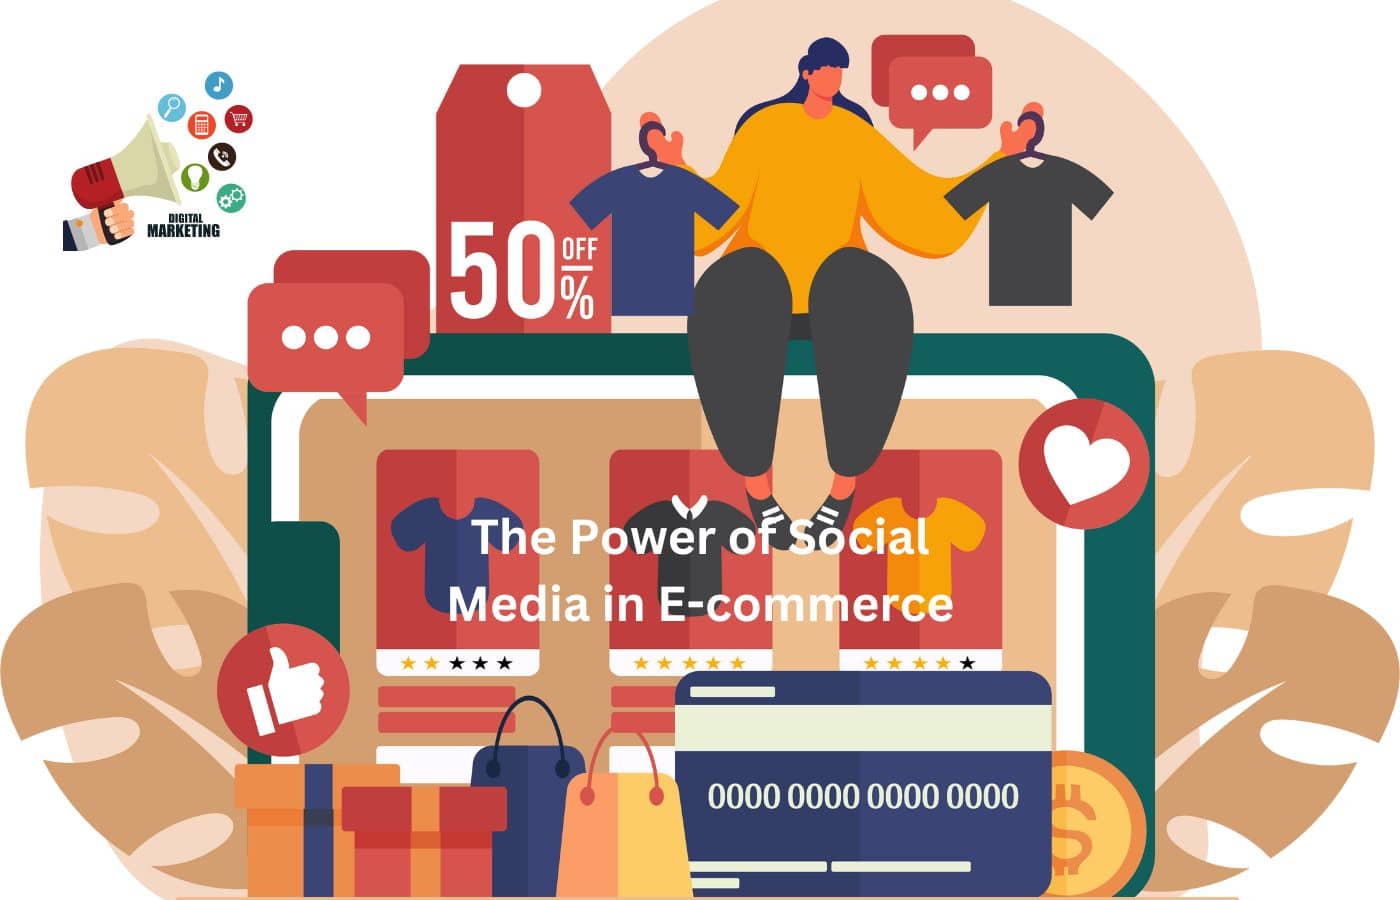 The Power of Social Media in E-commerce